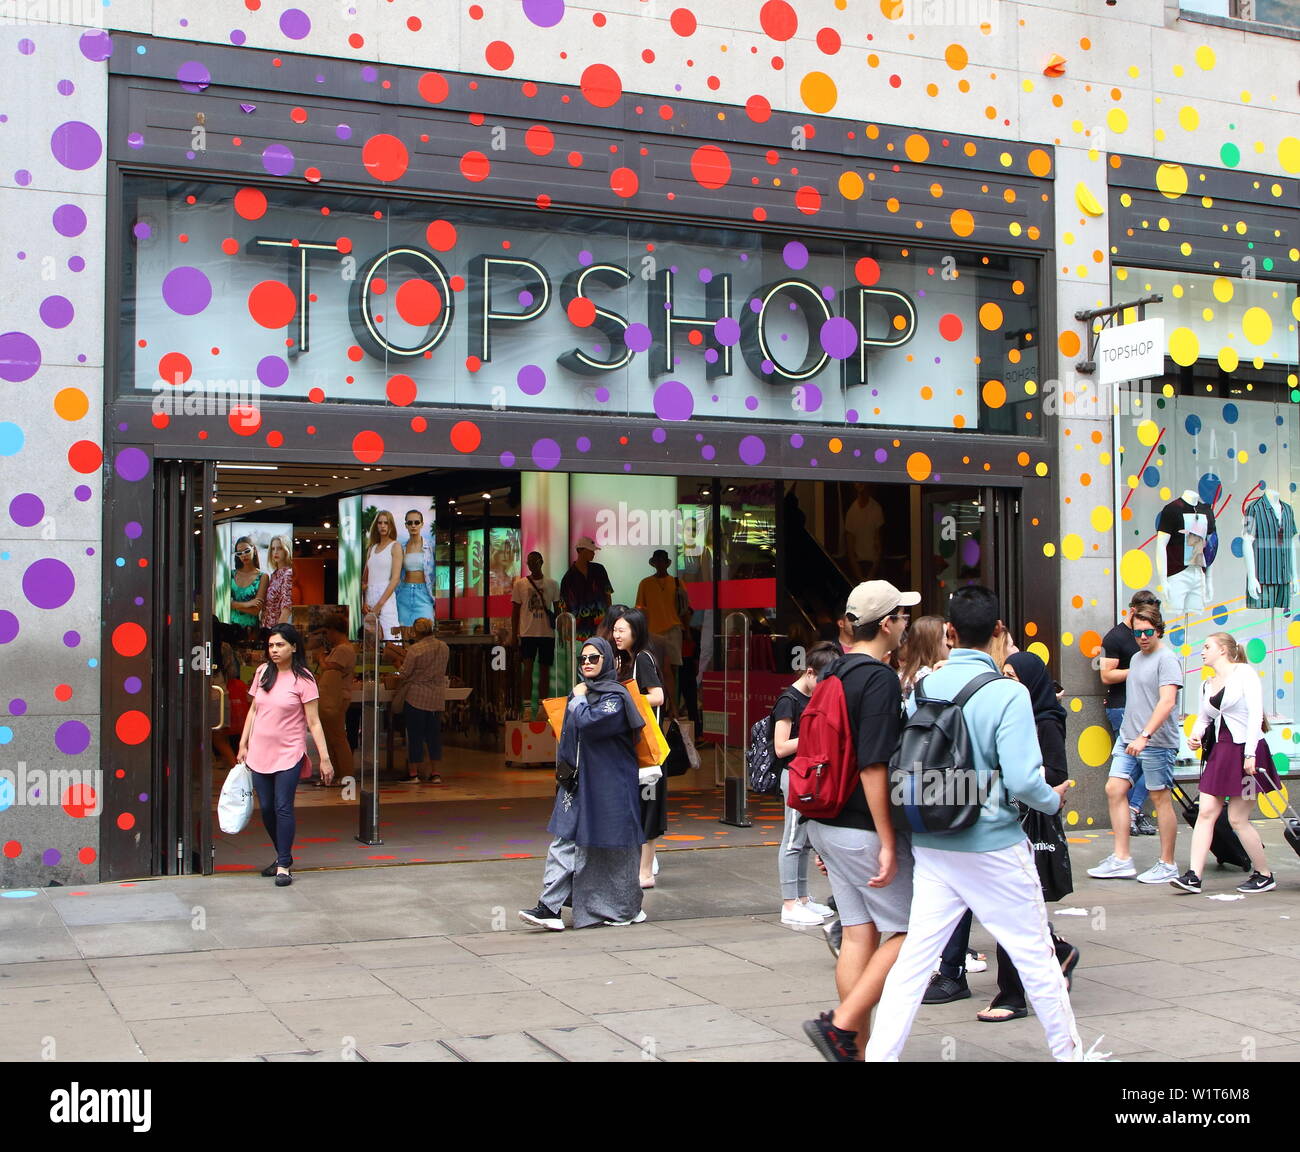 Topshop und Topman speichert gesehen mit Rainbow bubbles wird abgedeckt. vielen Einzelhandelsgeschäften in Shopping heartland in der Hauptstadt des West End sind derzeit in Regenbogen Farben dekoriert, die Unterstützung von Stolz. Eine jährliche Feier der LGBT-Gemeinschaft, Stolz gipfelt in der LGBT Pride Parade in London, zieht viele Tausende Besucher in die Hauptstadt, mit einem bunten, lebhaften und exzentrische Prozession durch die Stadt. Stockfoto